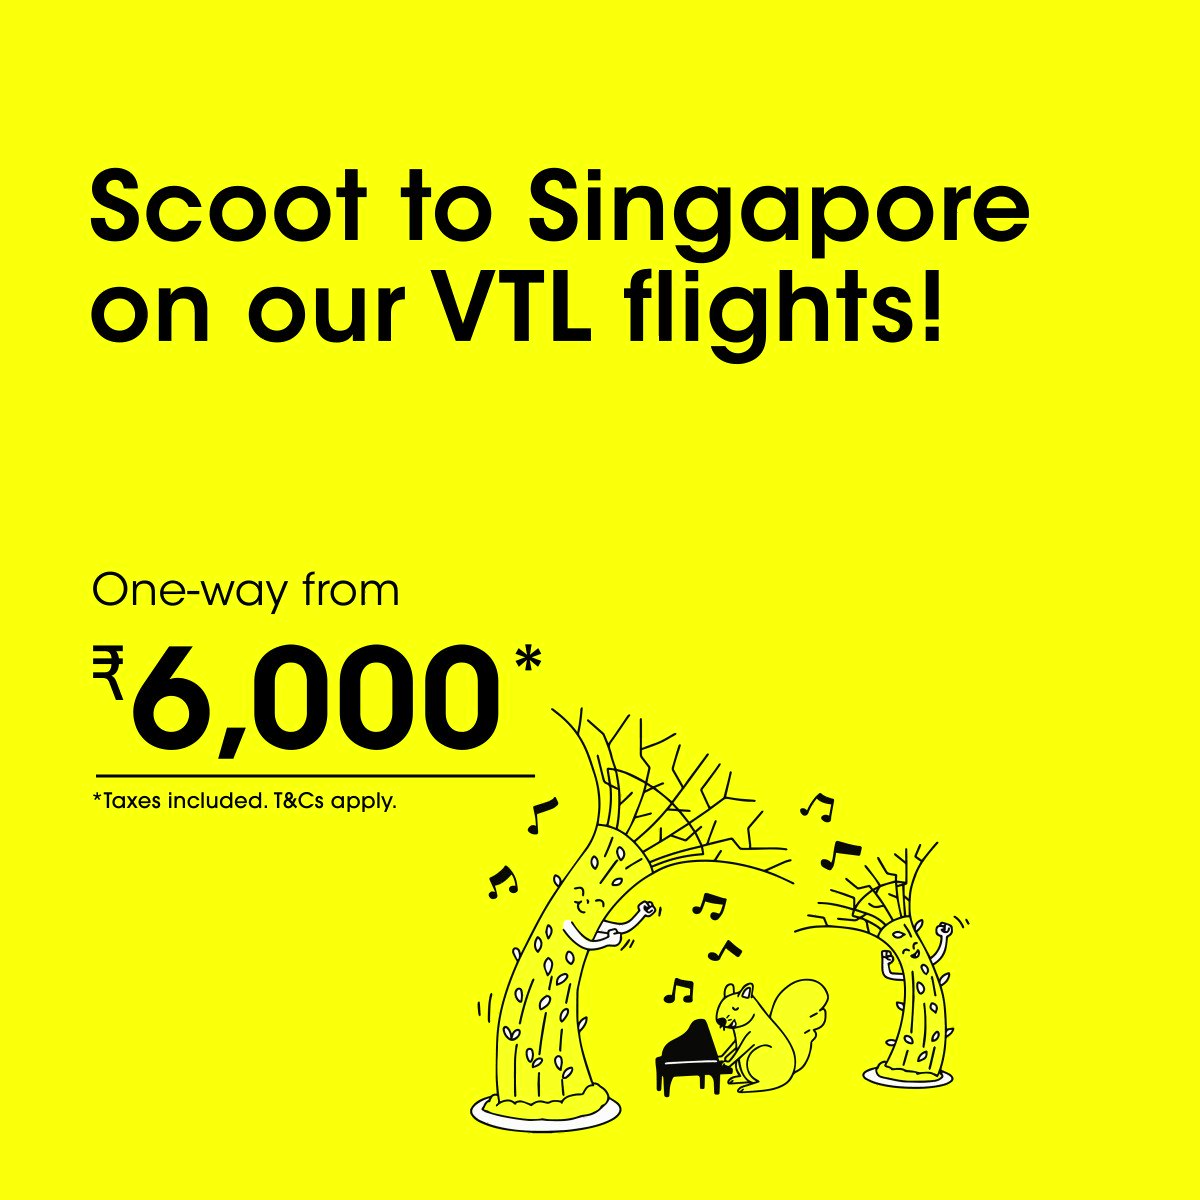 Scoot vtl flights